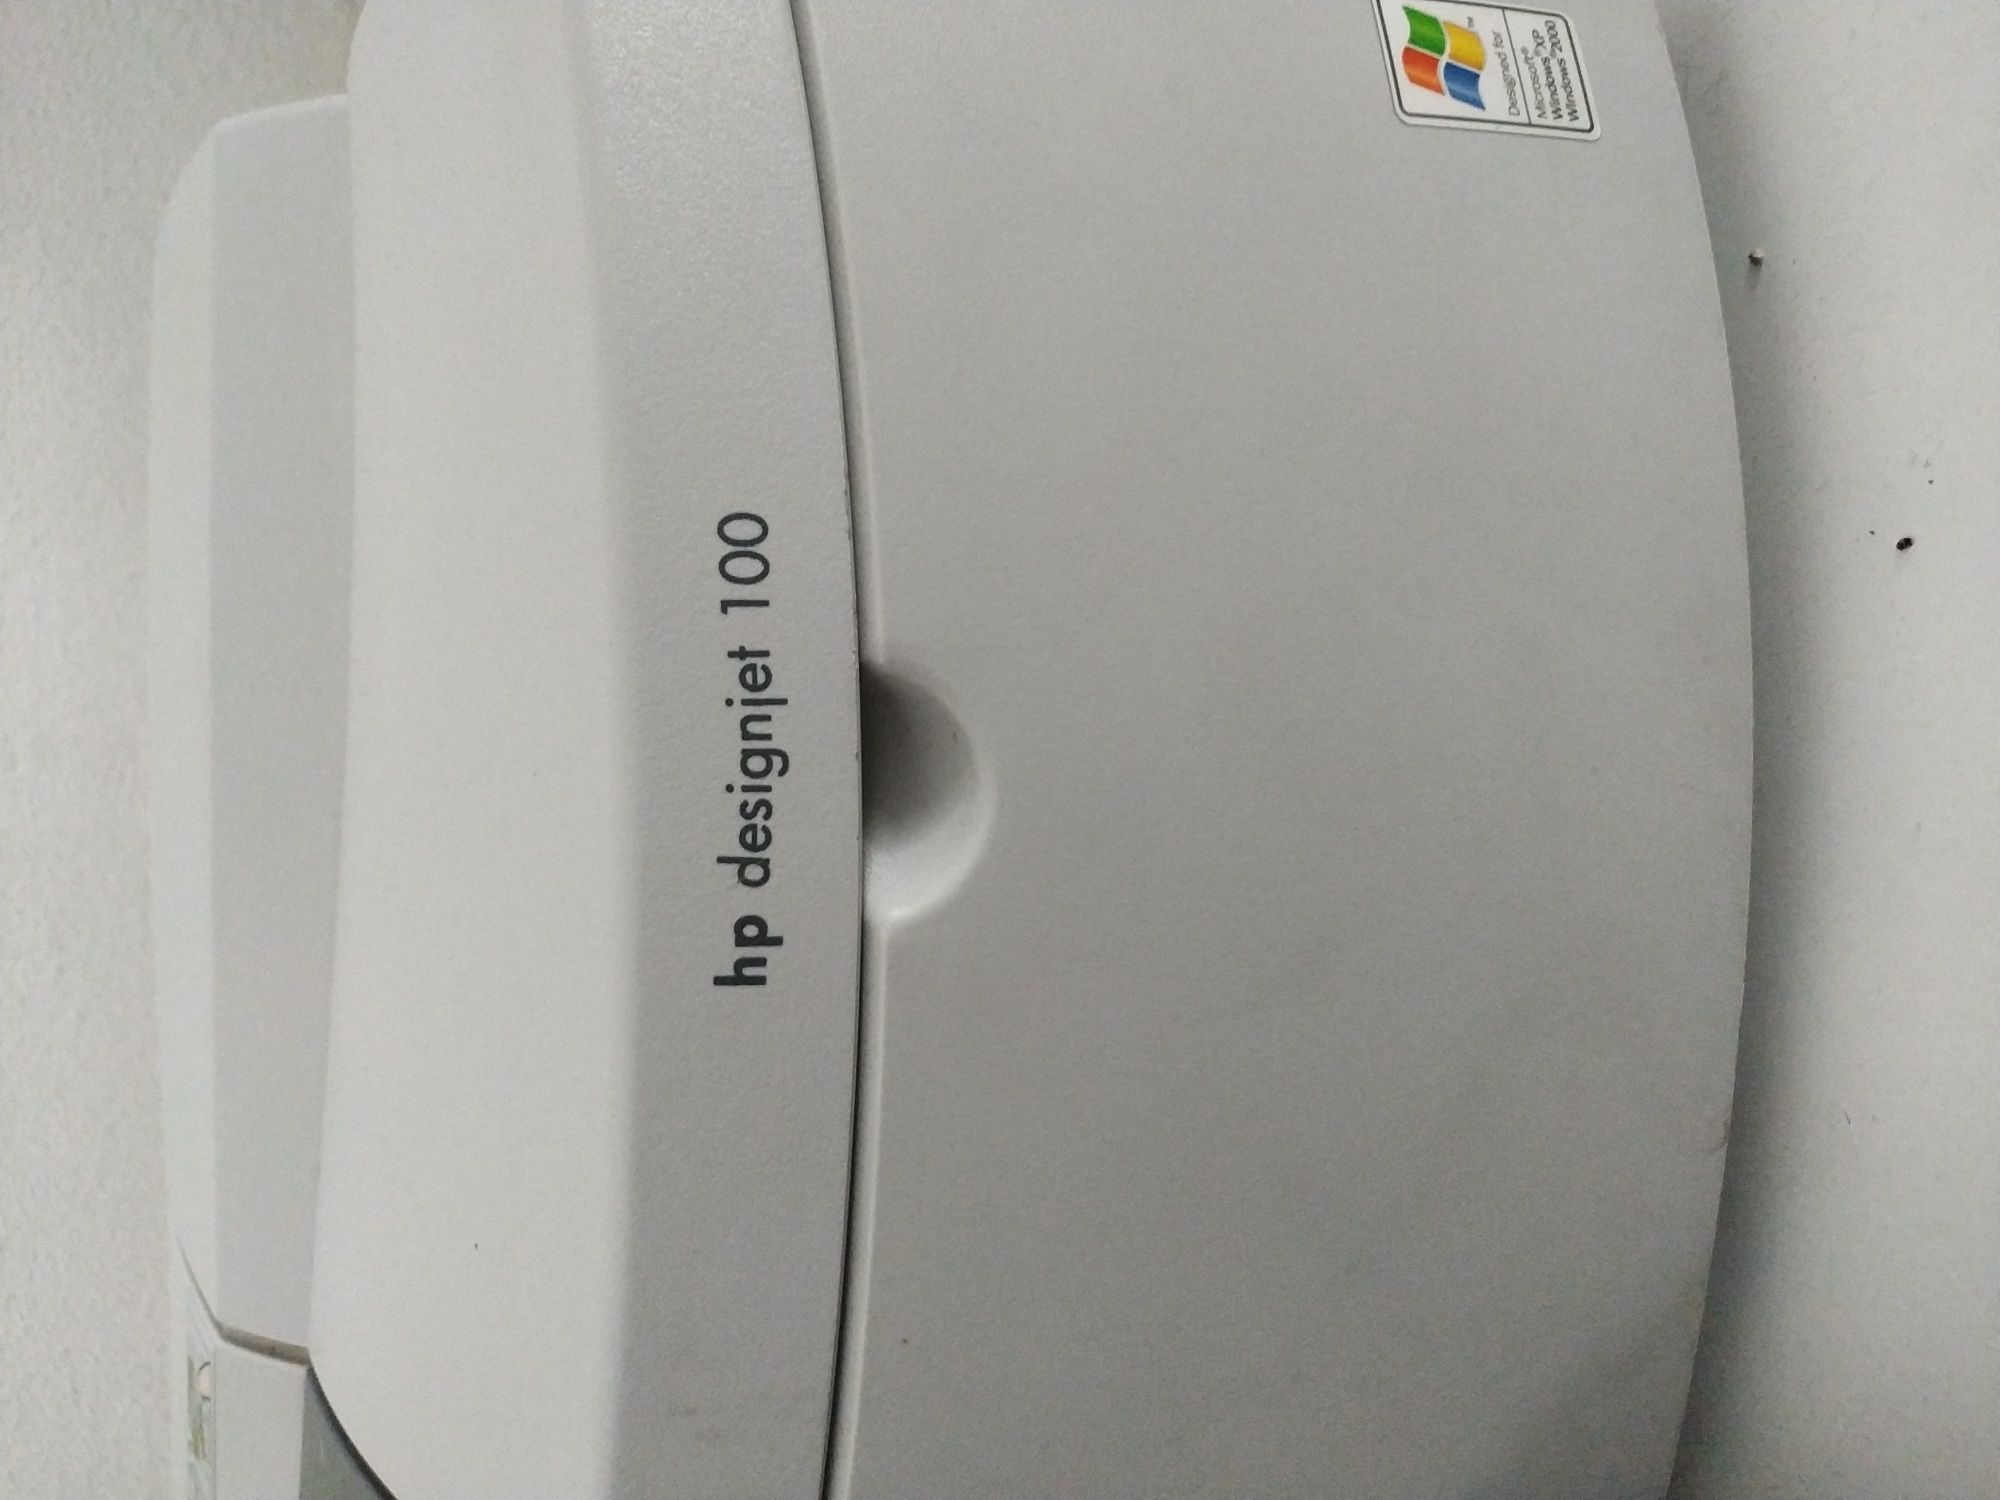 Impressora HP Designjet 100